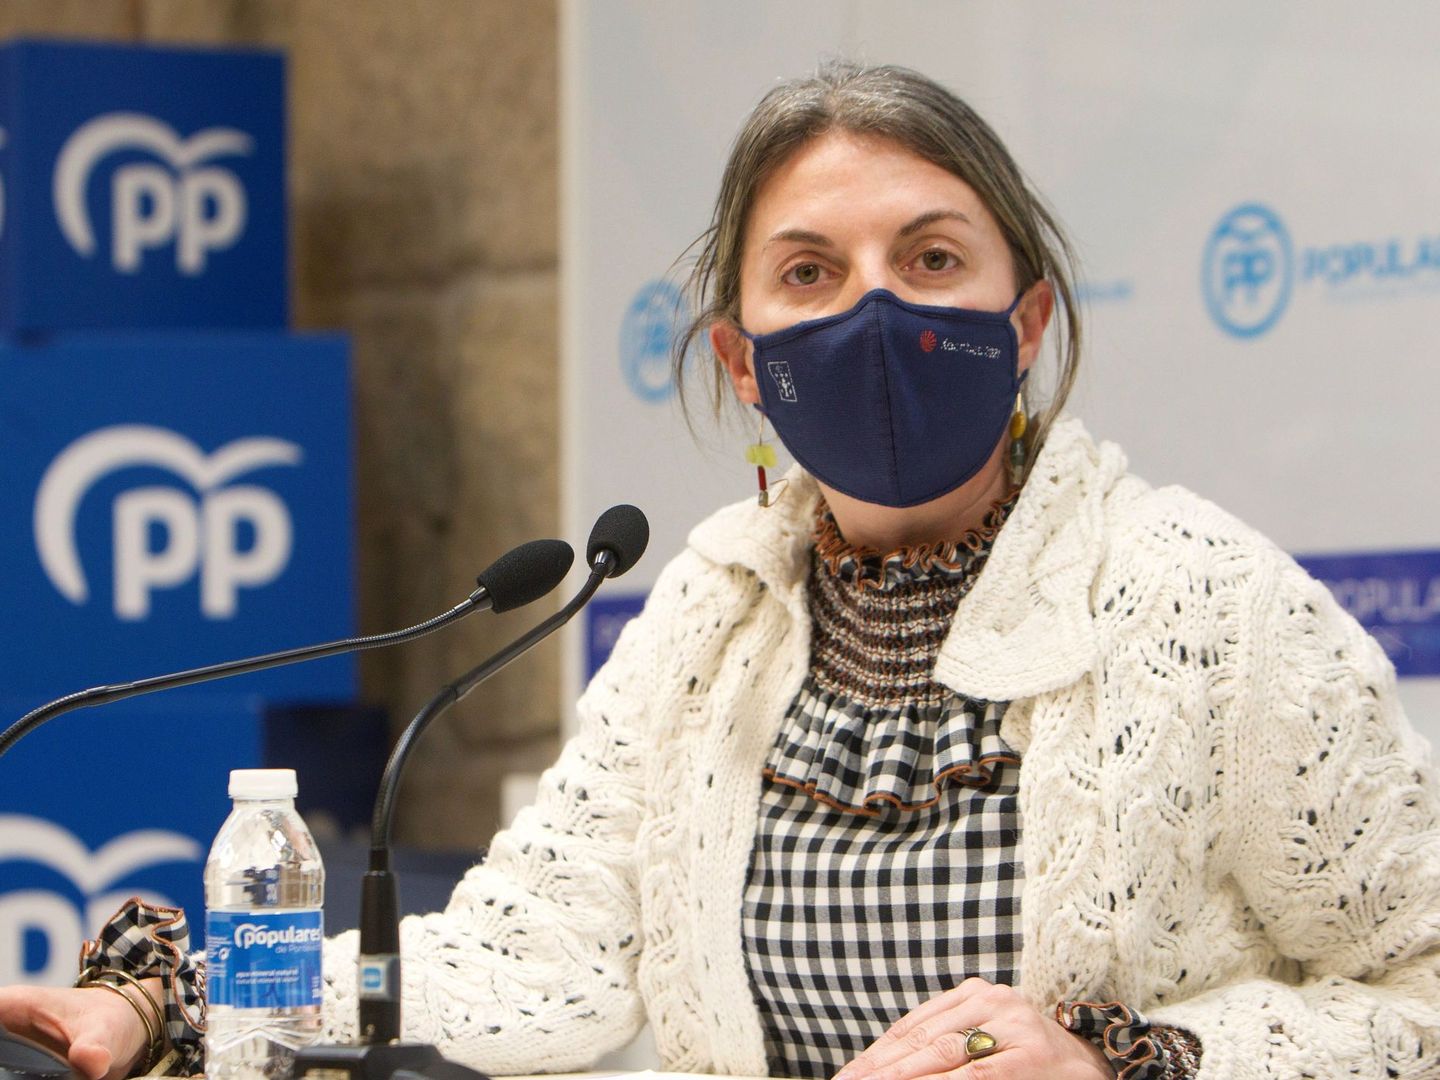  La delegada de la Xunta en Pontevedra, Luisa Piñeiro, durante la rueda de prensa en la que renunció a sus cargos tras la sentencia del TSJG. (Efe)